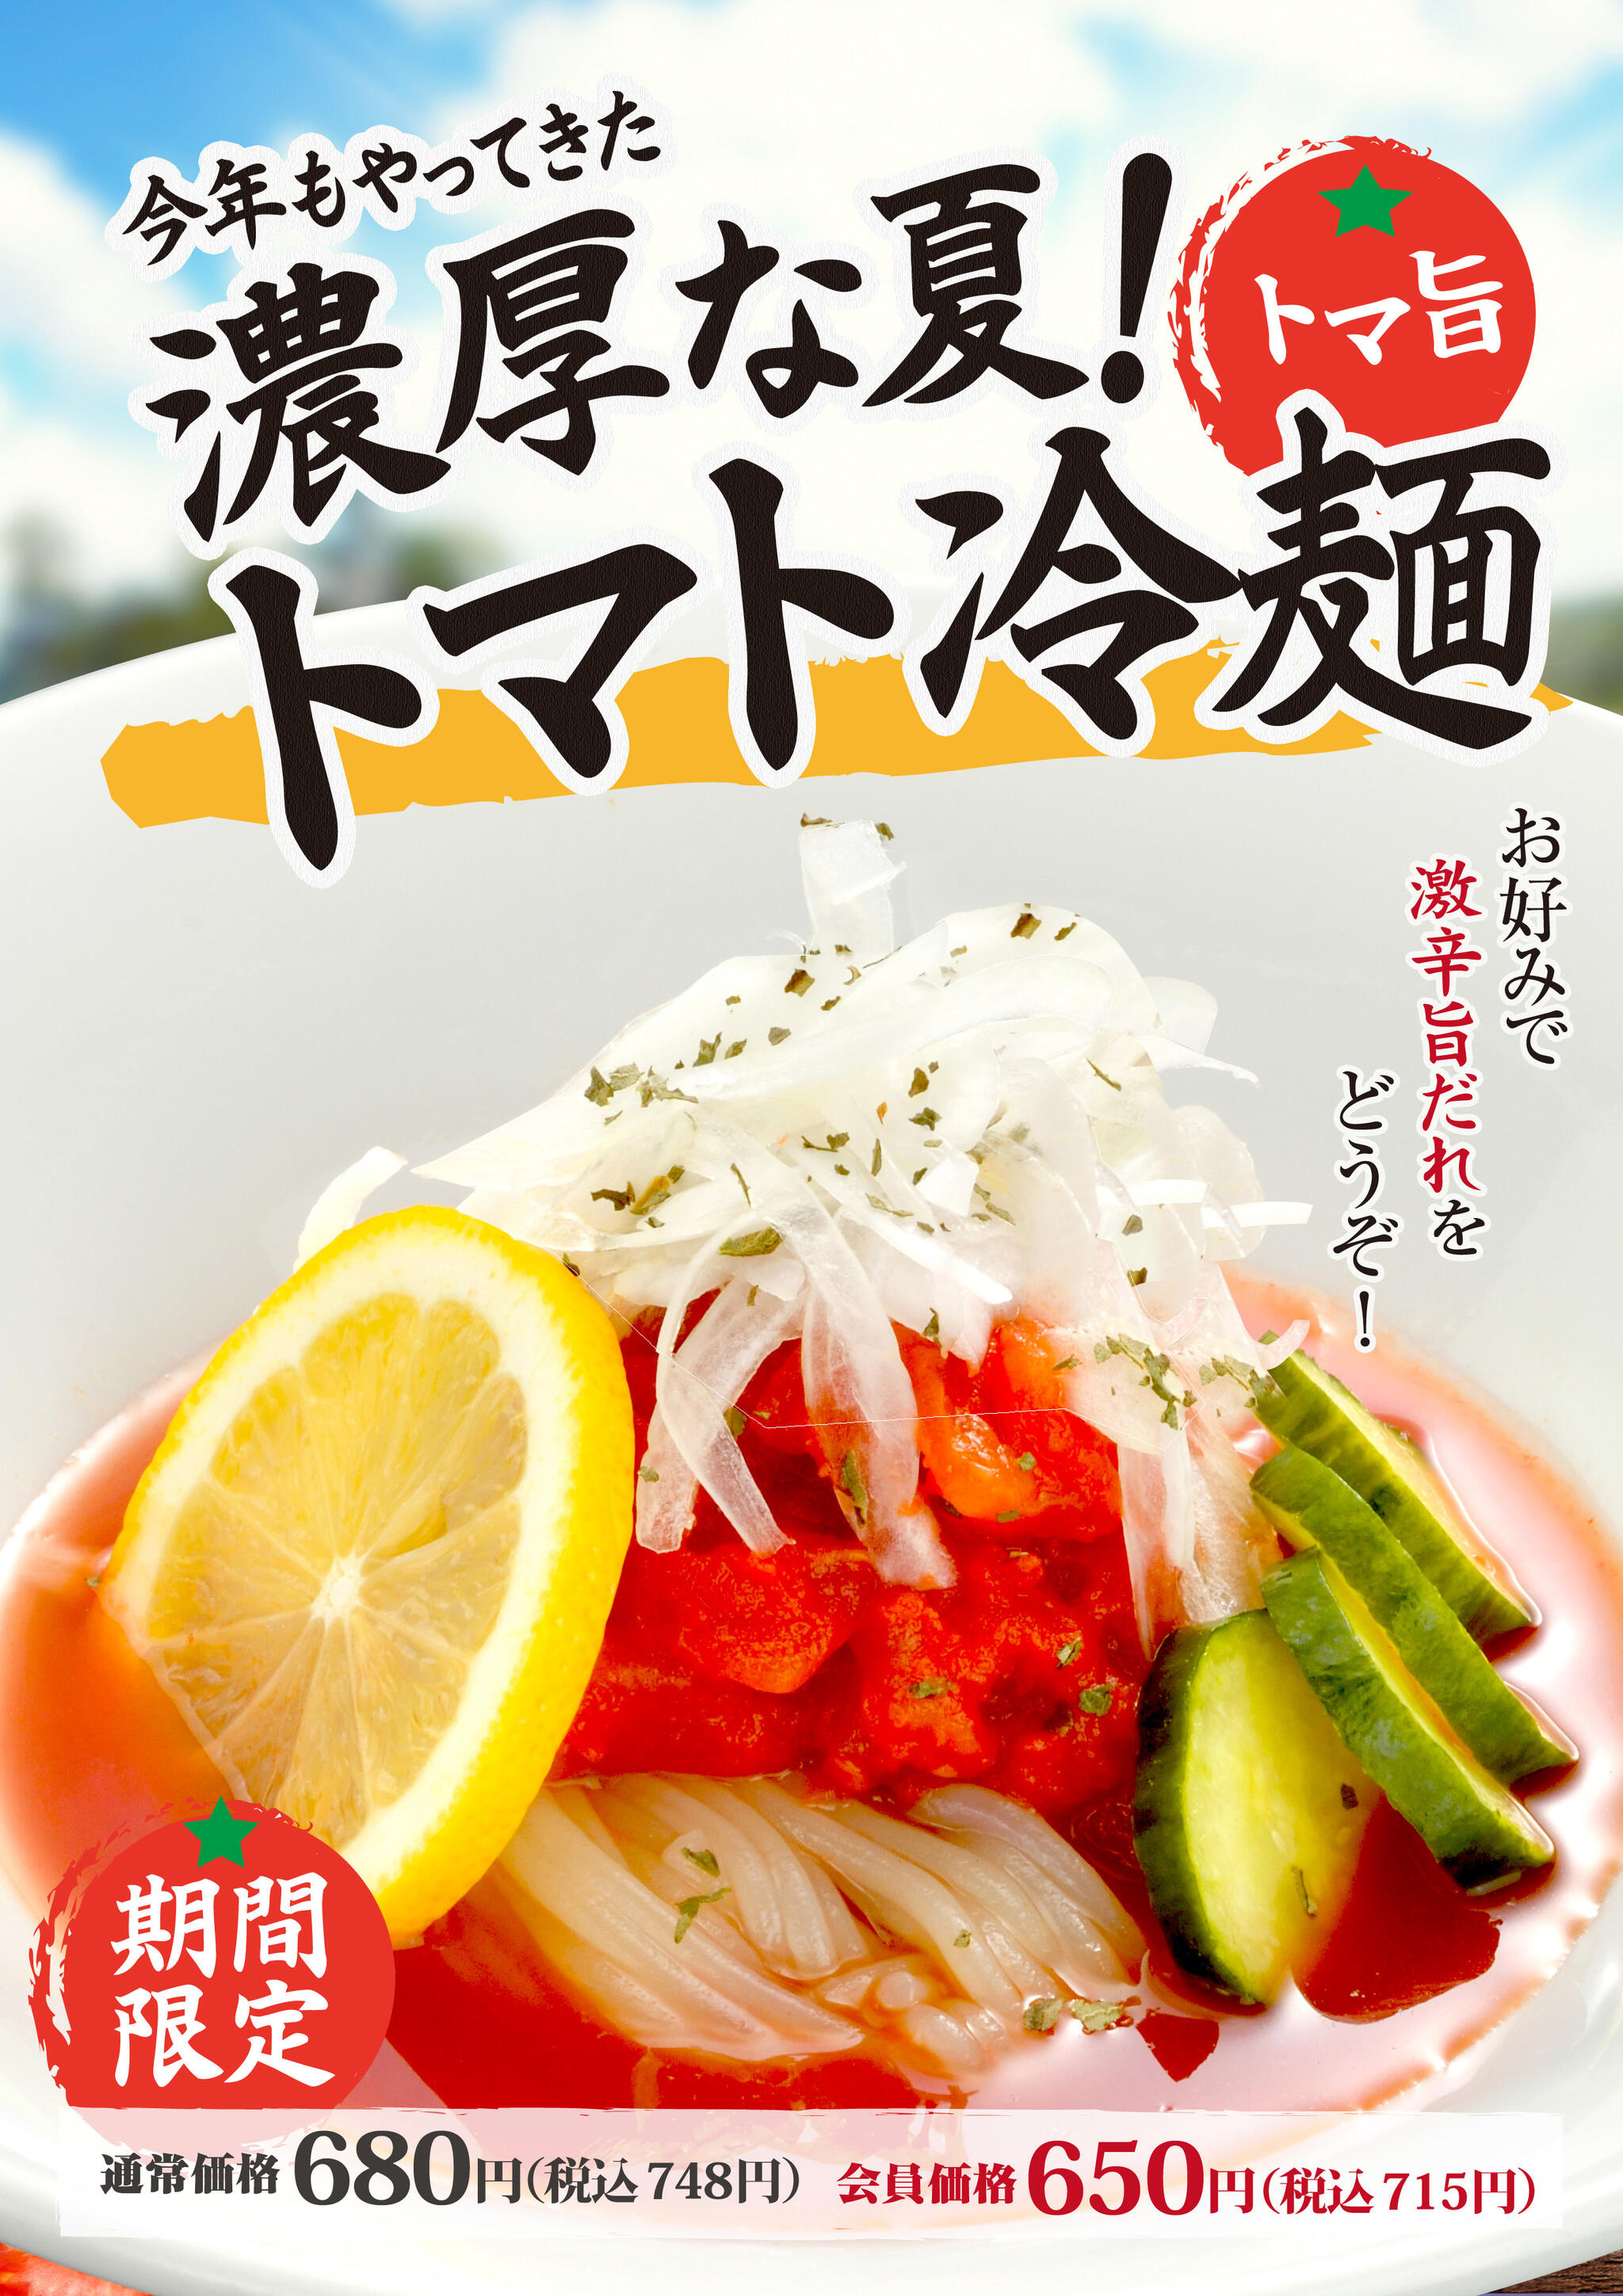 焼肉冷麺やまなか家 上田バイパス店からのお知らせ(今年もやってきました🍅🍋🍅トマト冷麺🍅🍋🍅❕)に関する写真